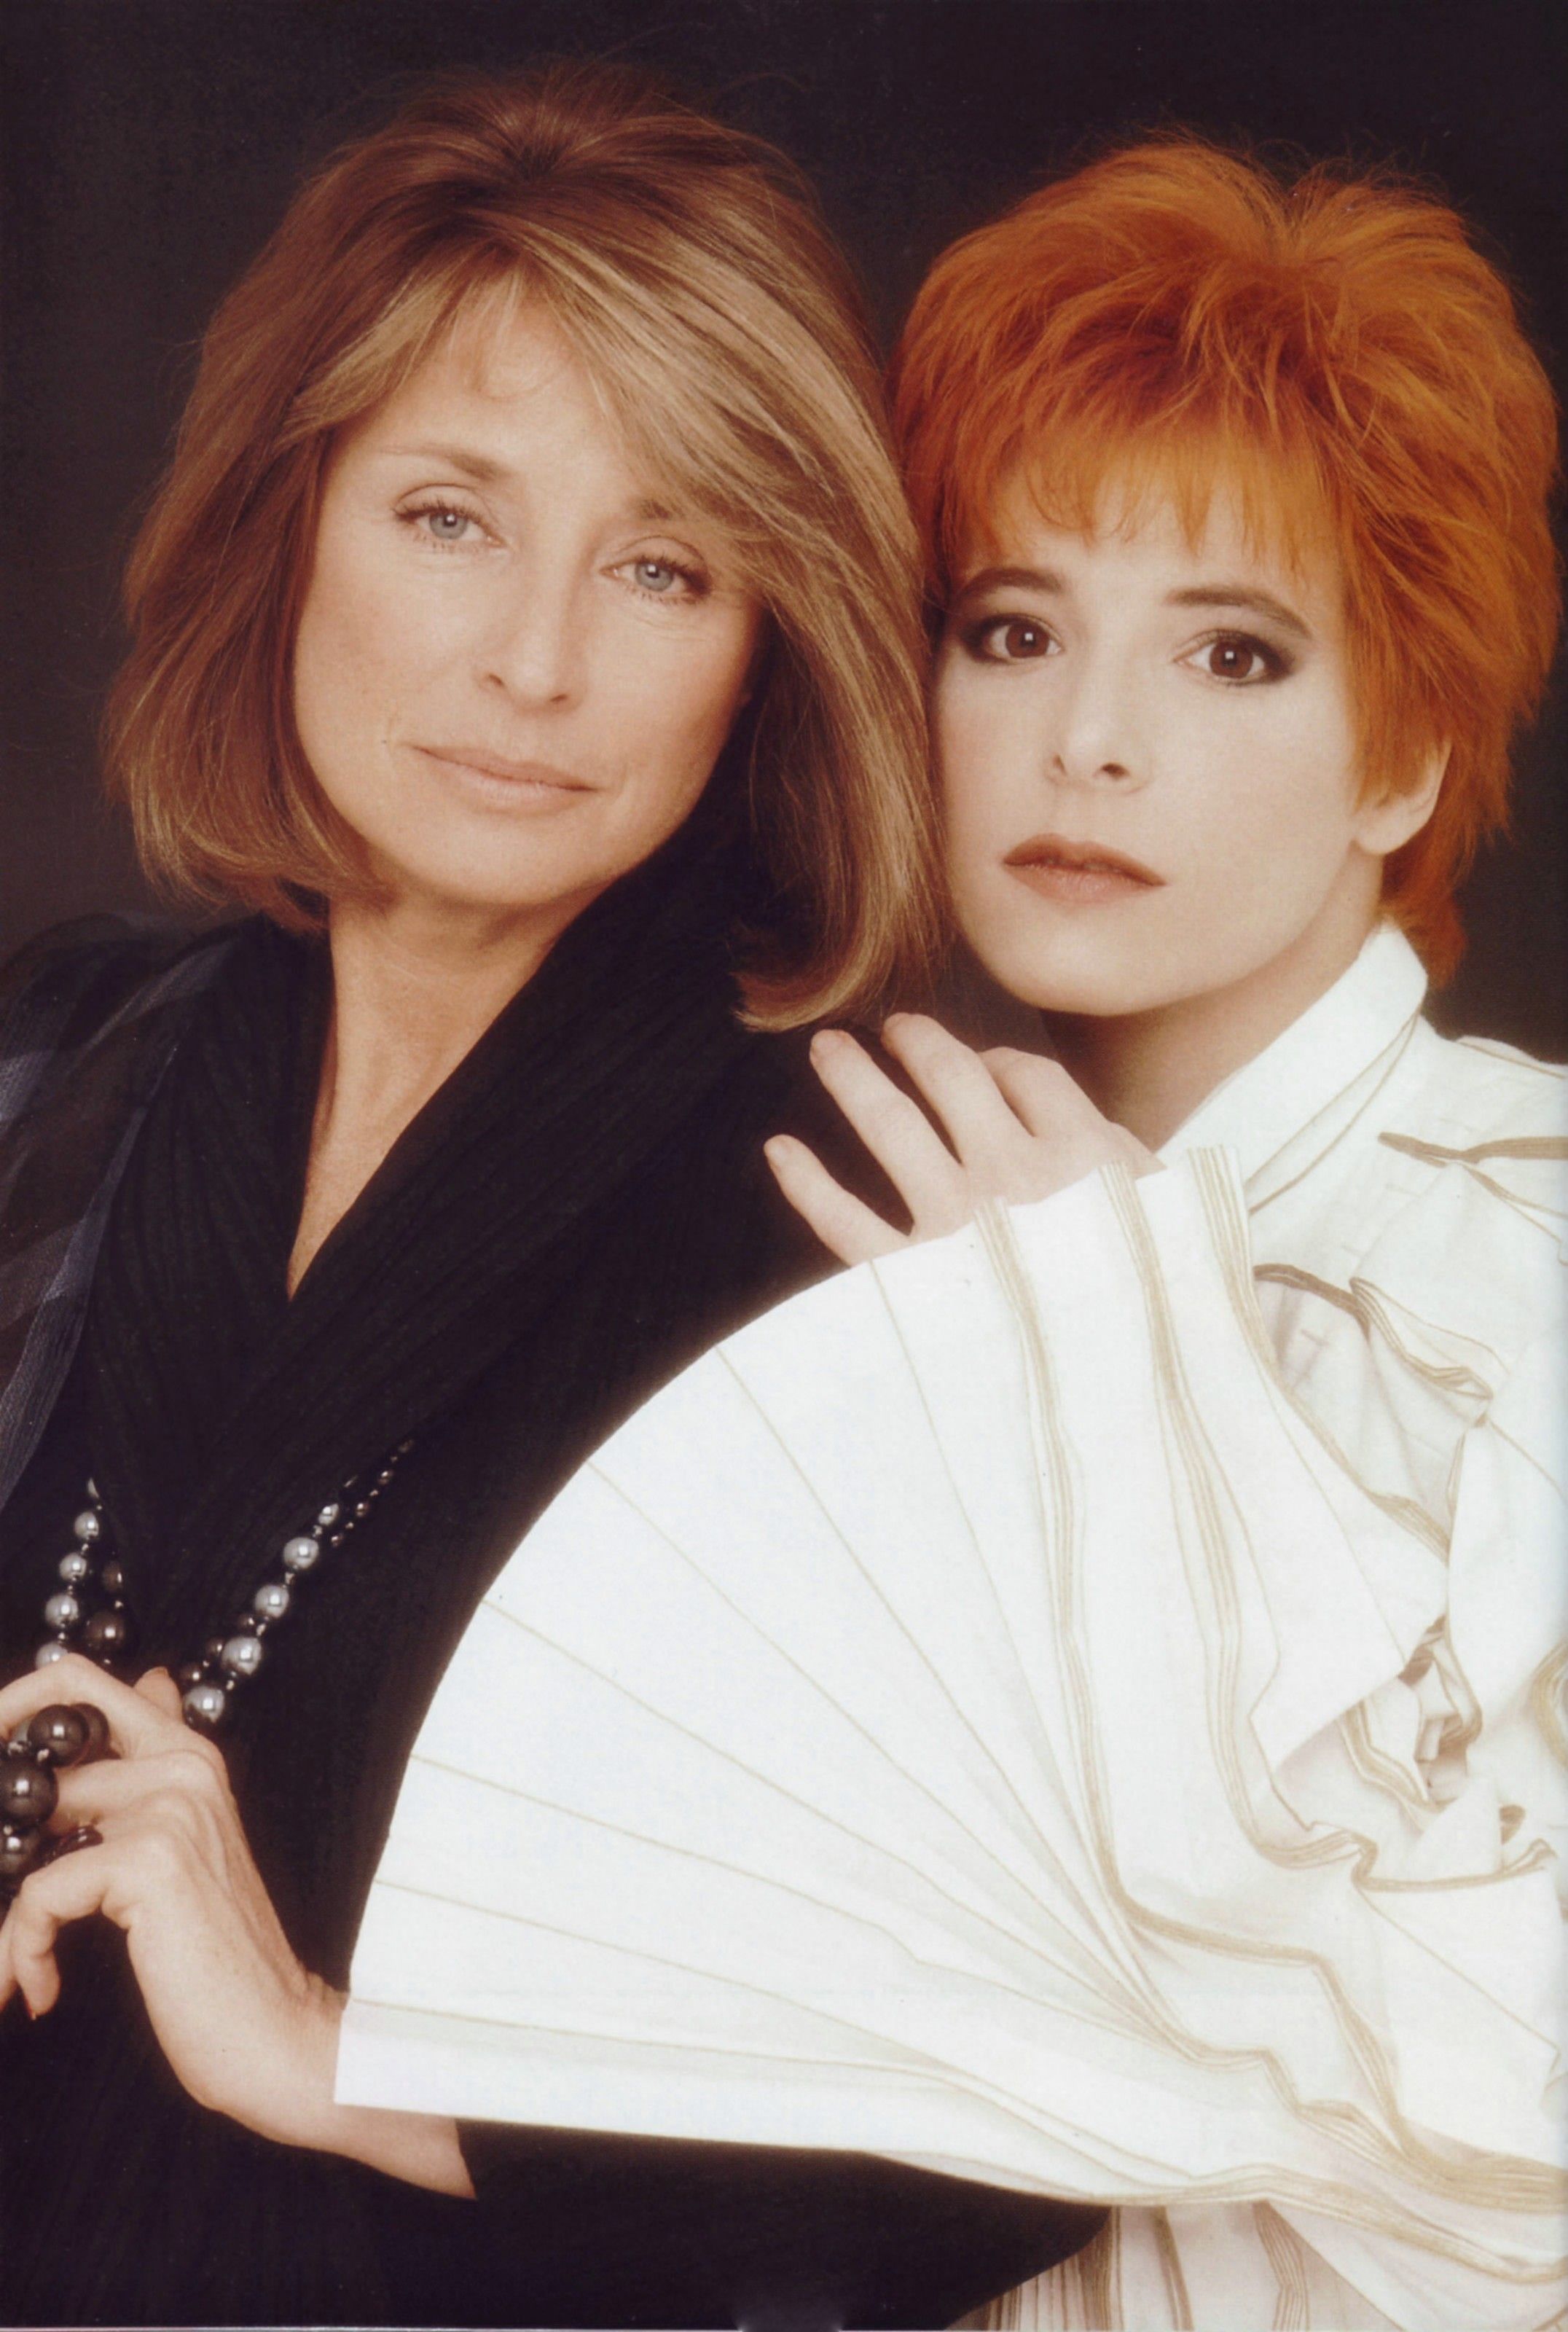 Danièle Thompson et Mylène Farmer - Photographe Marianne Rosenstiehl - Avril 1991